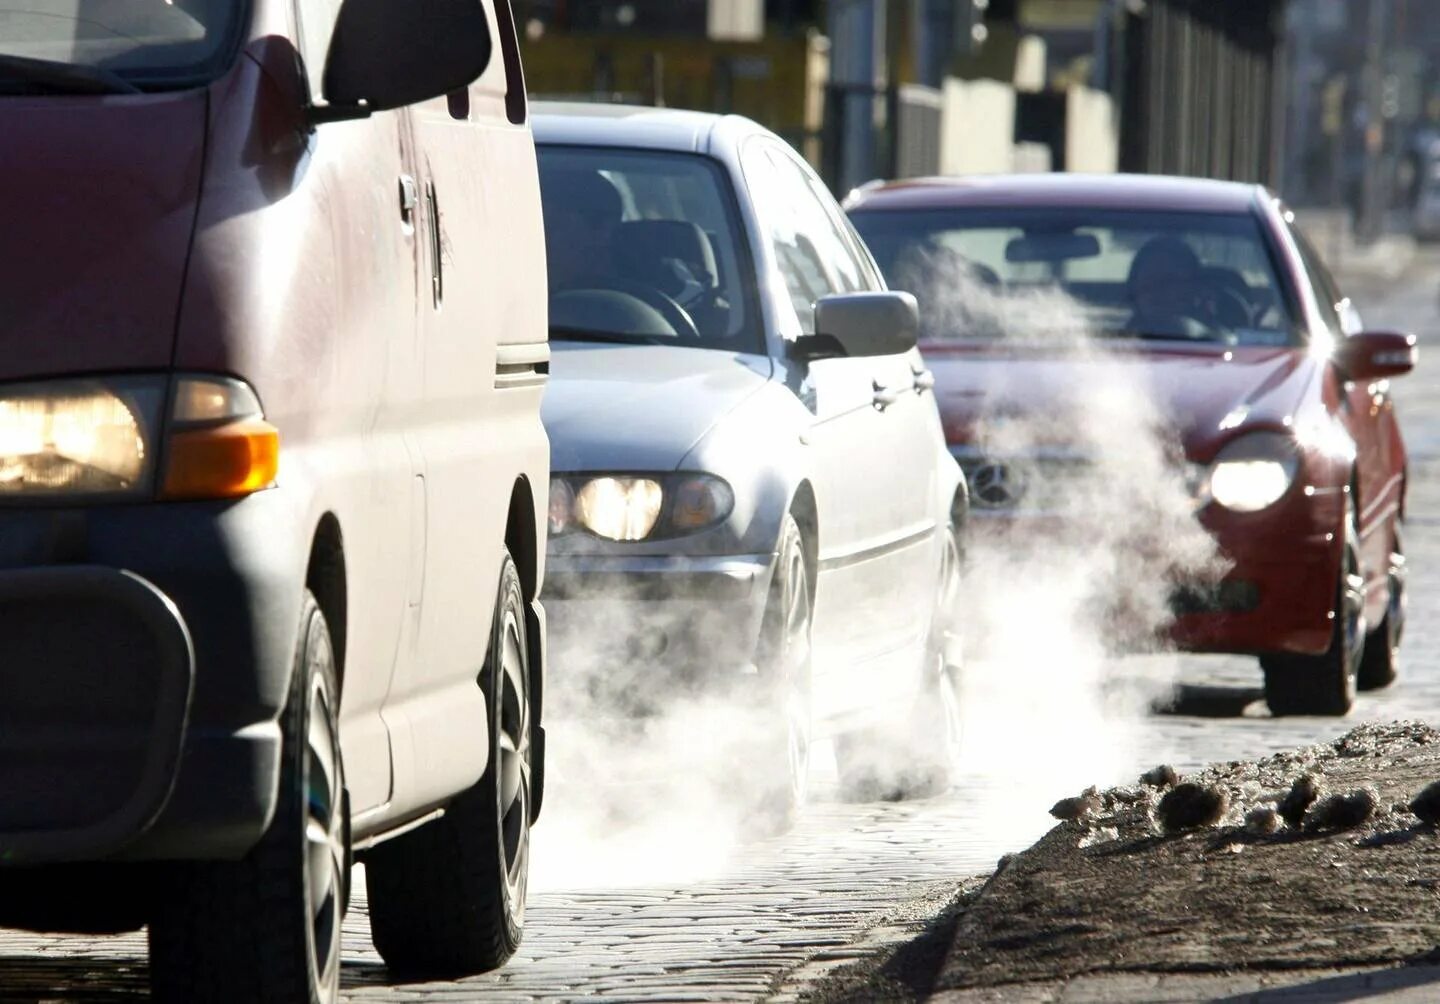 Выхлопные газы автомобилей воздух. Выхлоп машины. Загрязнение воздуха машинами. Выхлопы от автомобилей. Машины загрязняют воздух.